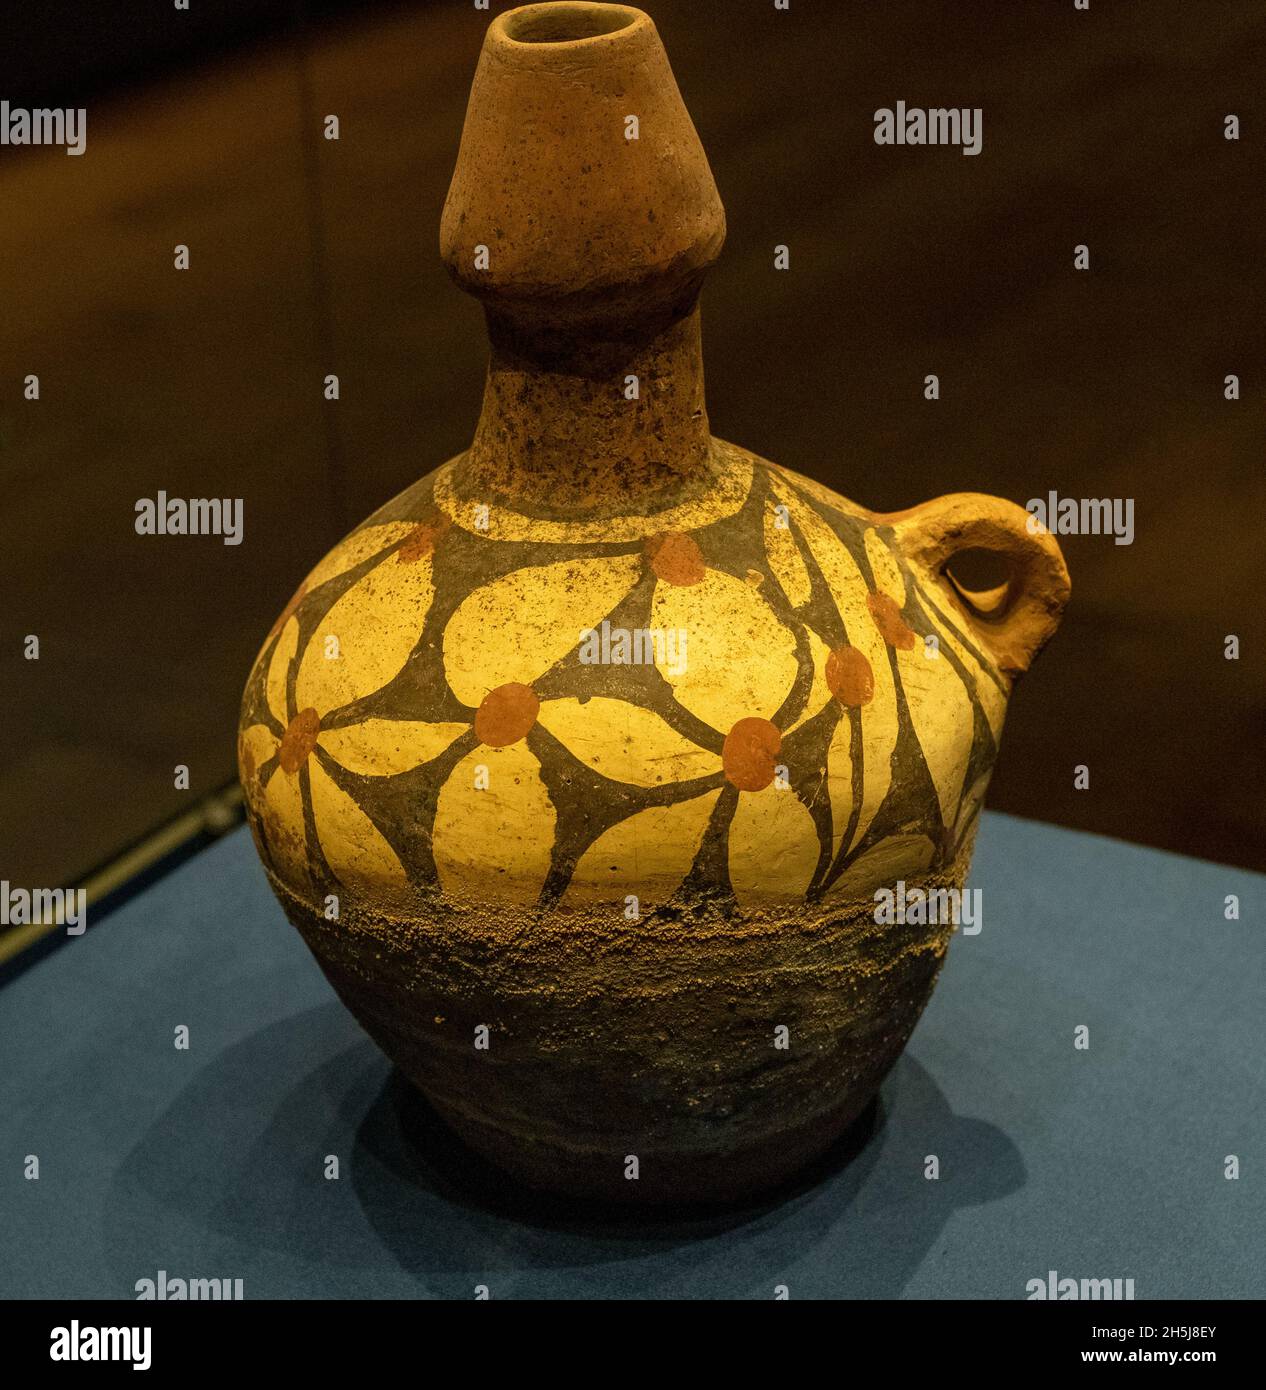 Vasija de cerámica pintada con asa única. Cultura Xiyin / Cultura Miaodigou, hace unos 5300-5800 años. Foto de stock